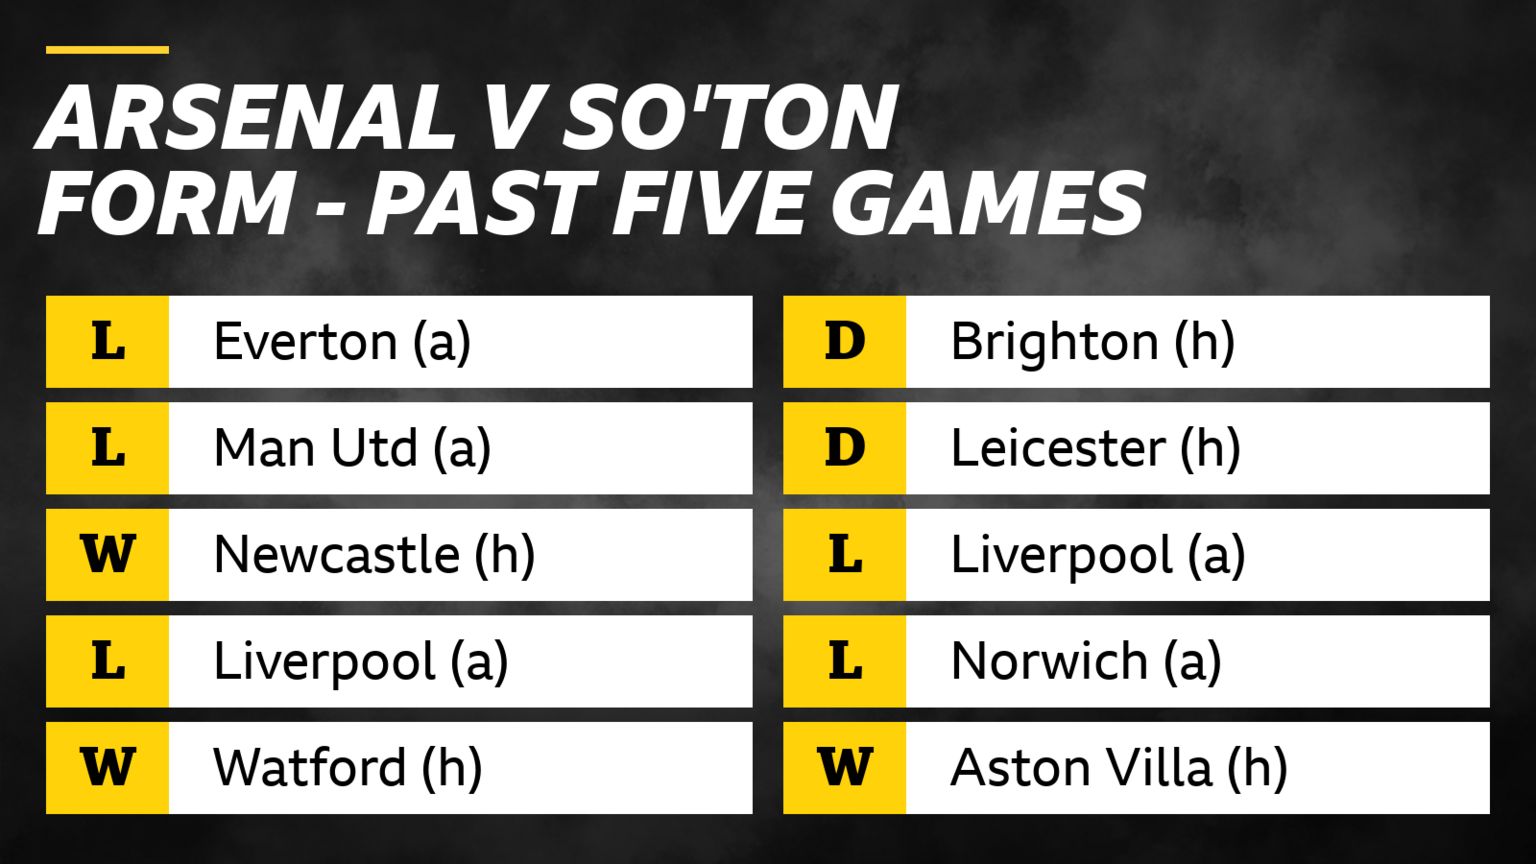 Arsenal v Southampton – form in past five games: Arsenal - L Everton (a), L Man Utd (a), W Newcastle (h),  L Liverpool (a), W Watford (h). Southampton - D	Brighton (h), D Leicester (h), L Liverpool (a), L Norwich (a), W Aston Villa (h).